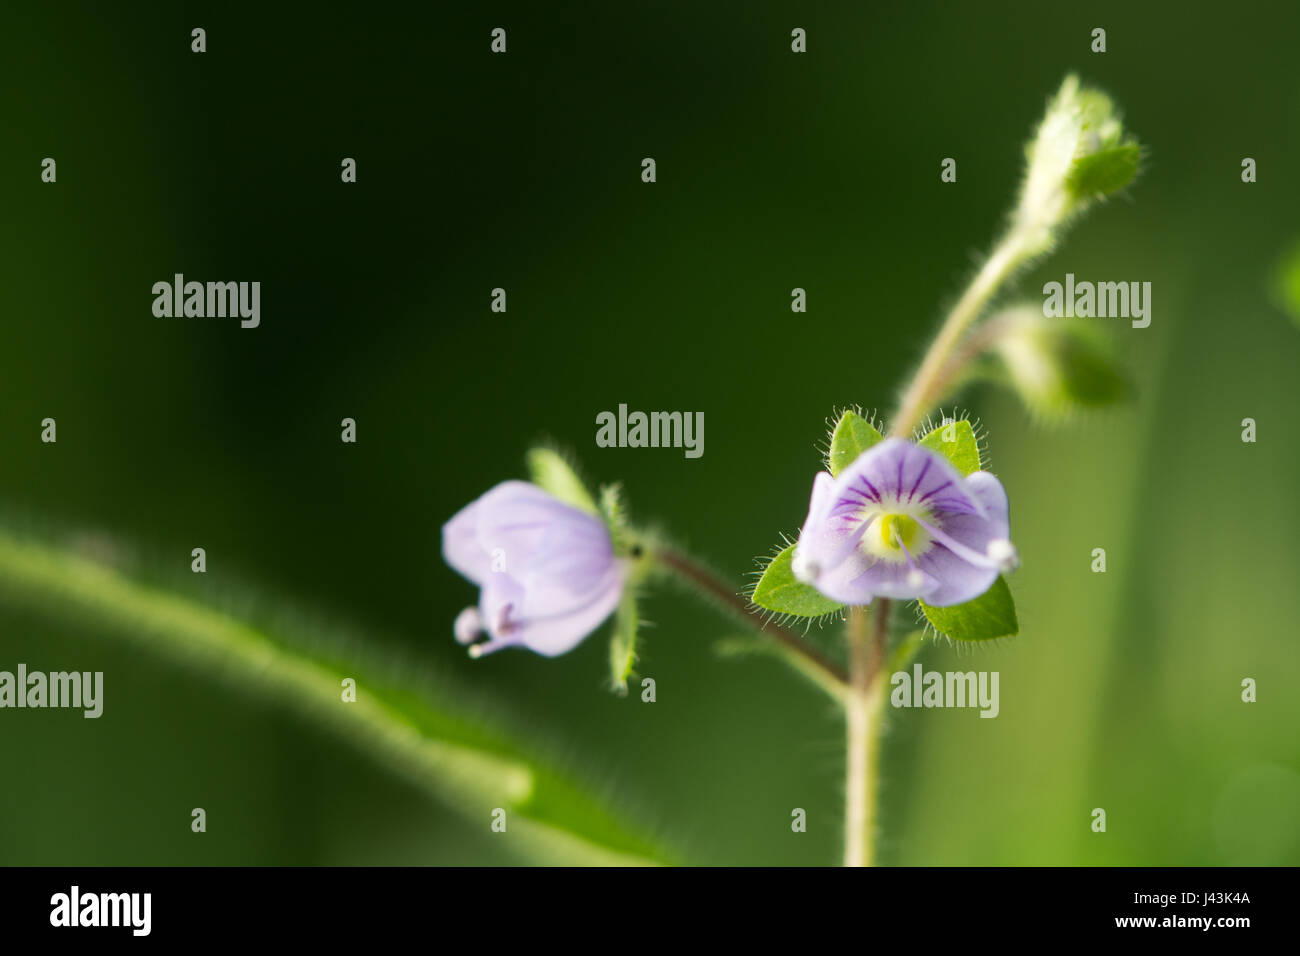 Legno speedwell (Veronica montana) in fiore. Blu fiore della pianta nella famiglia Plantaginaceae, contraddistinta da peli tutti attorno allo stelo Foto Stock